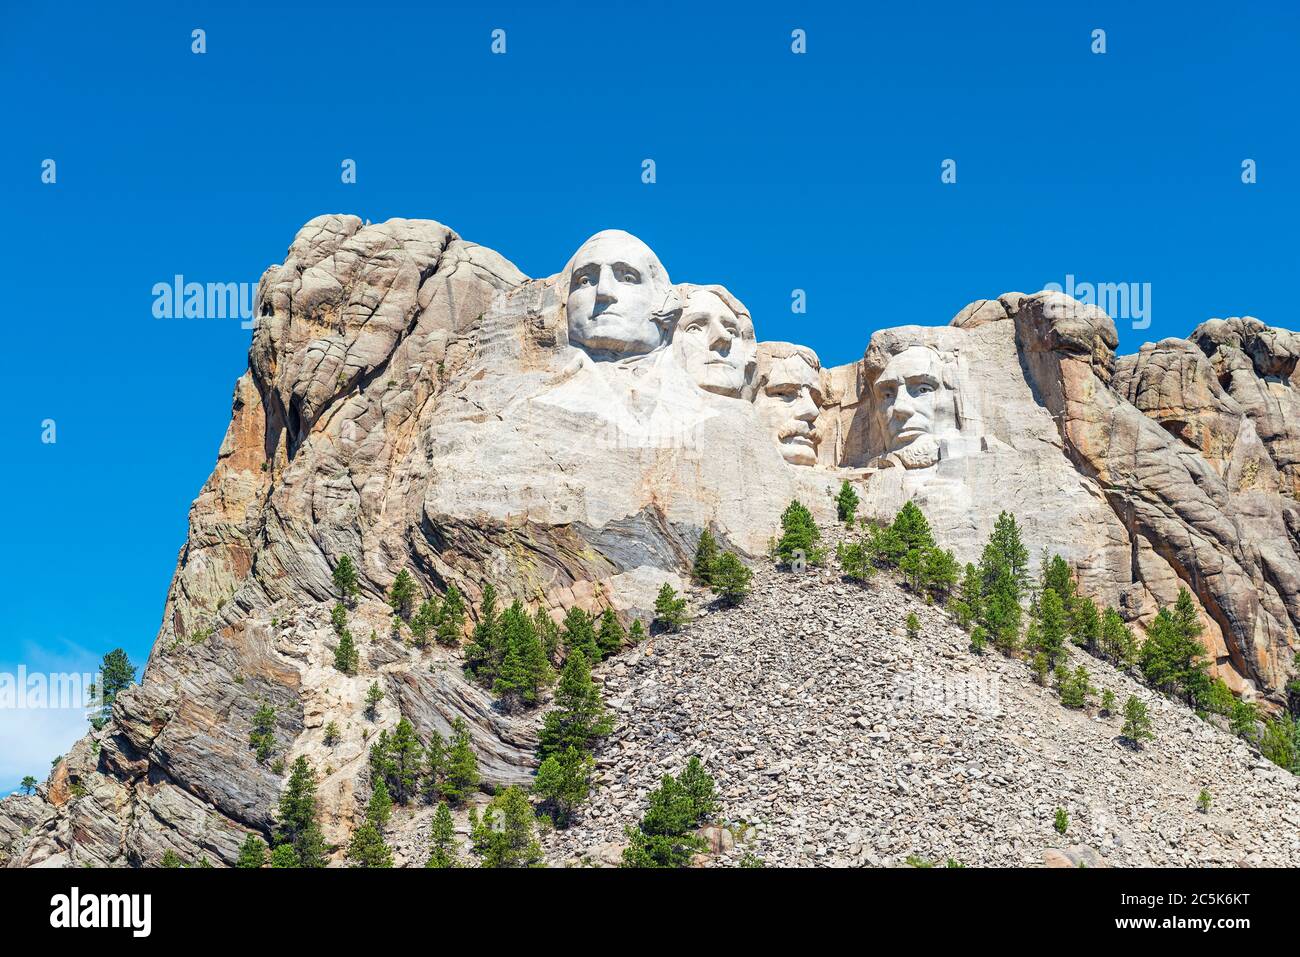 Vue panoramique du monument national du Mont Rushmore avec forêt et nature environnantes près de Rapid City dans le Dakota du Sud, États-Unis d'Amérique, États-Unis. Banque D'Images